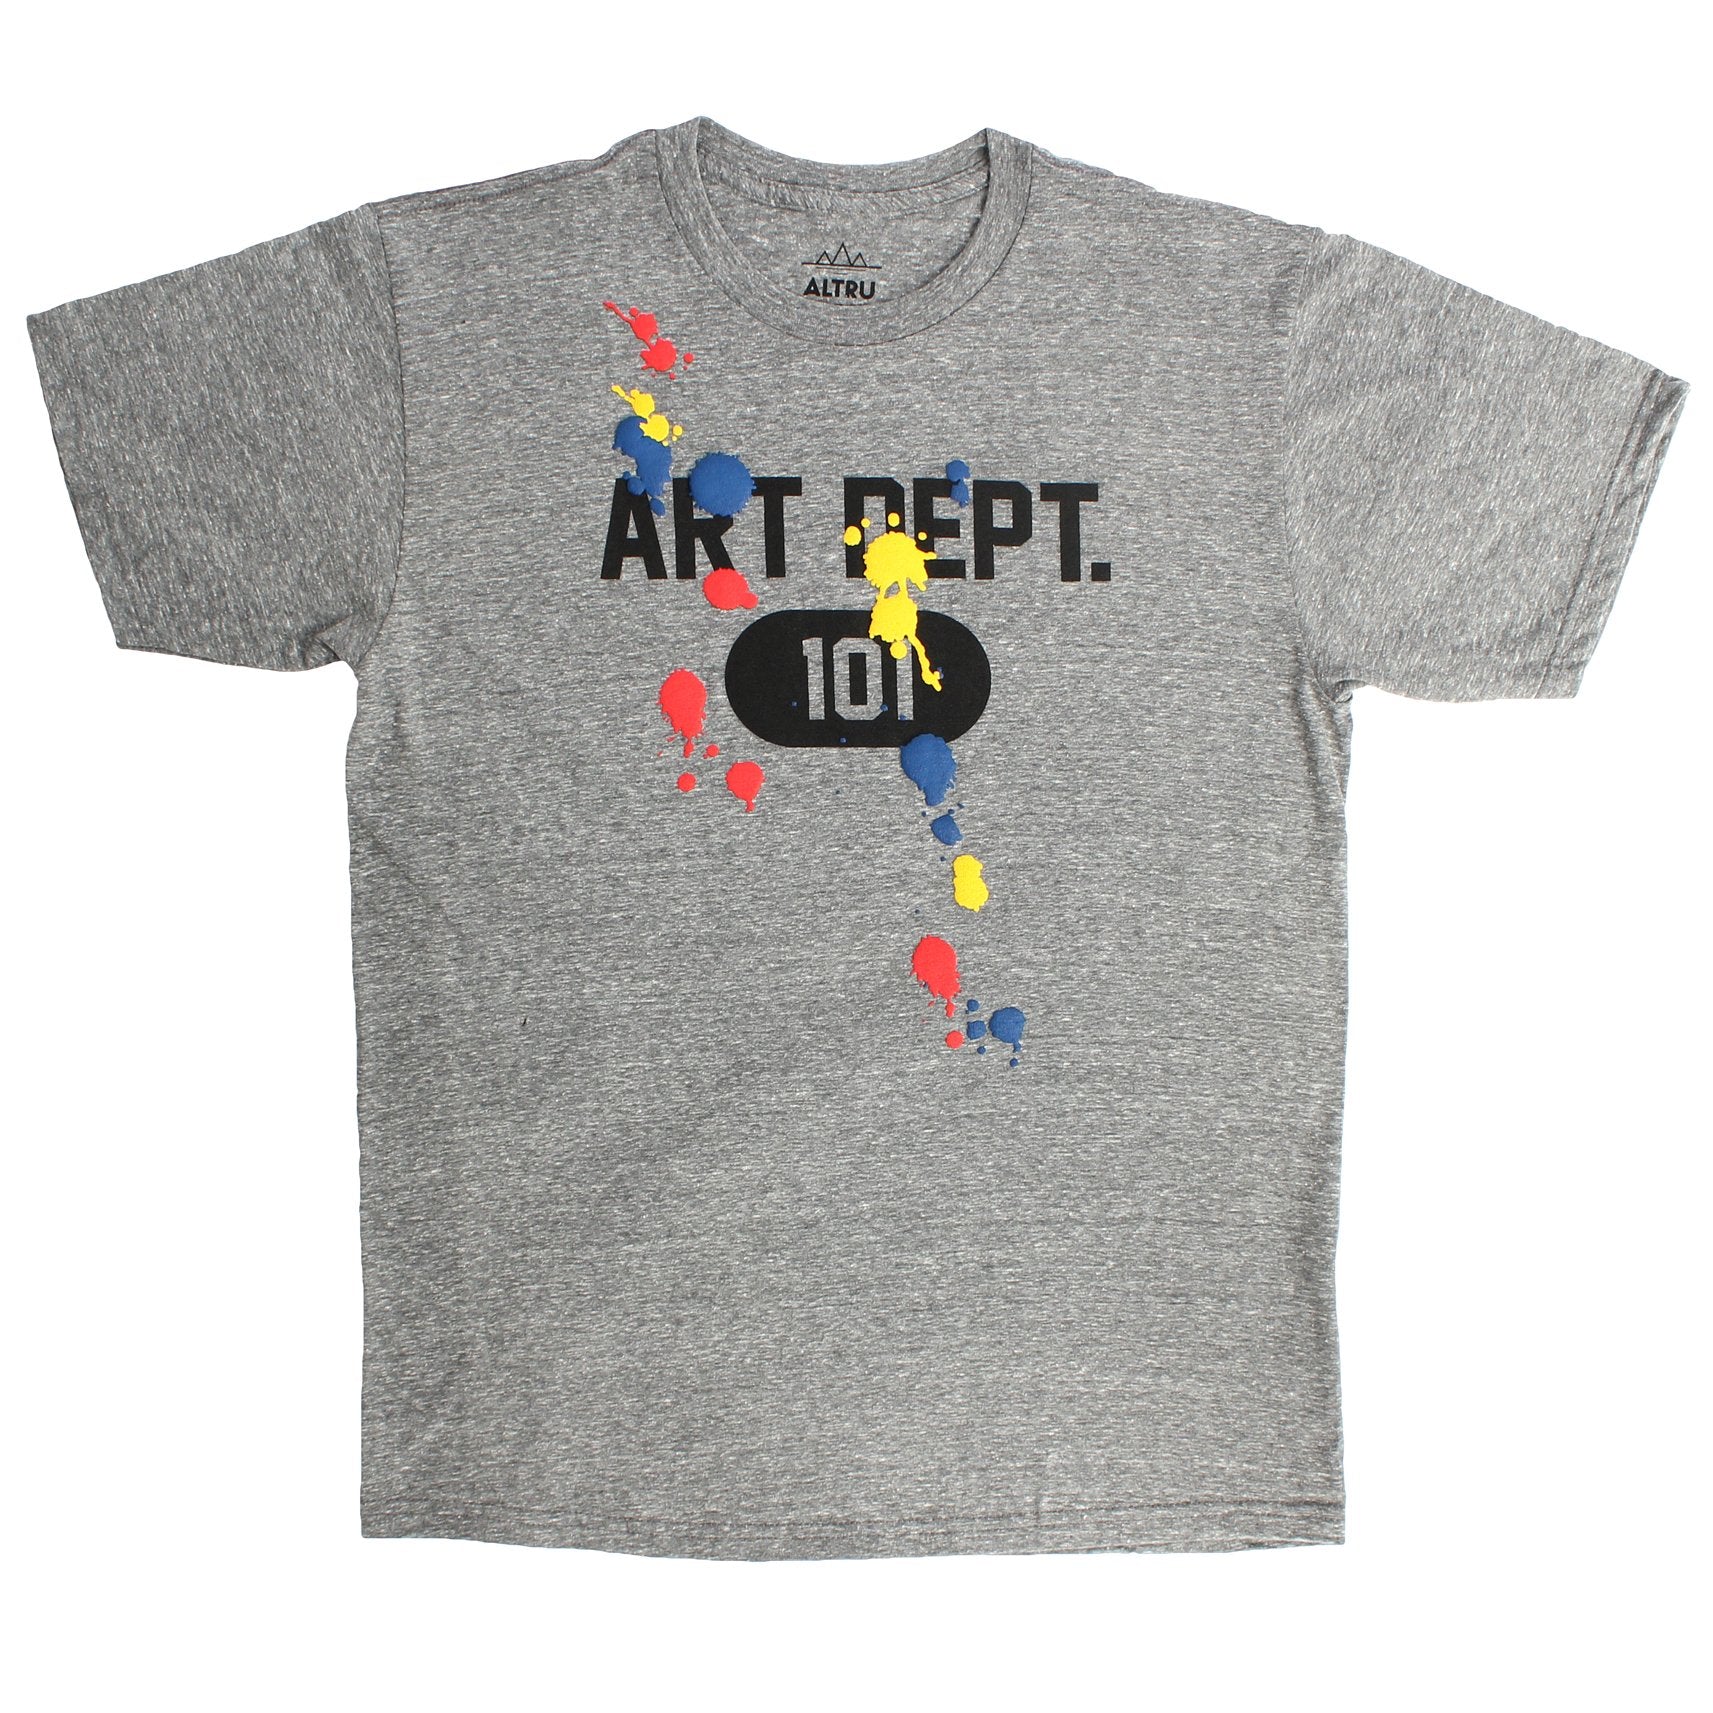 Art Dept. 101 Puffy Paint Splats Fun Graphic T-shirt - Altru Apparel